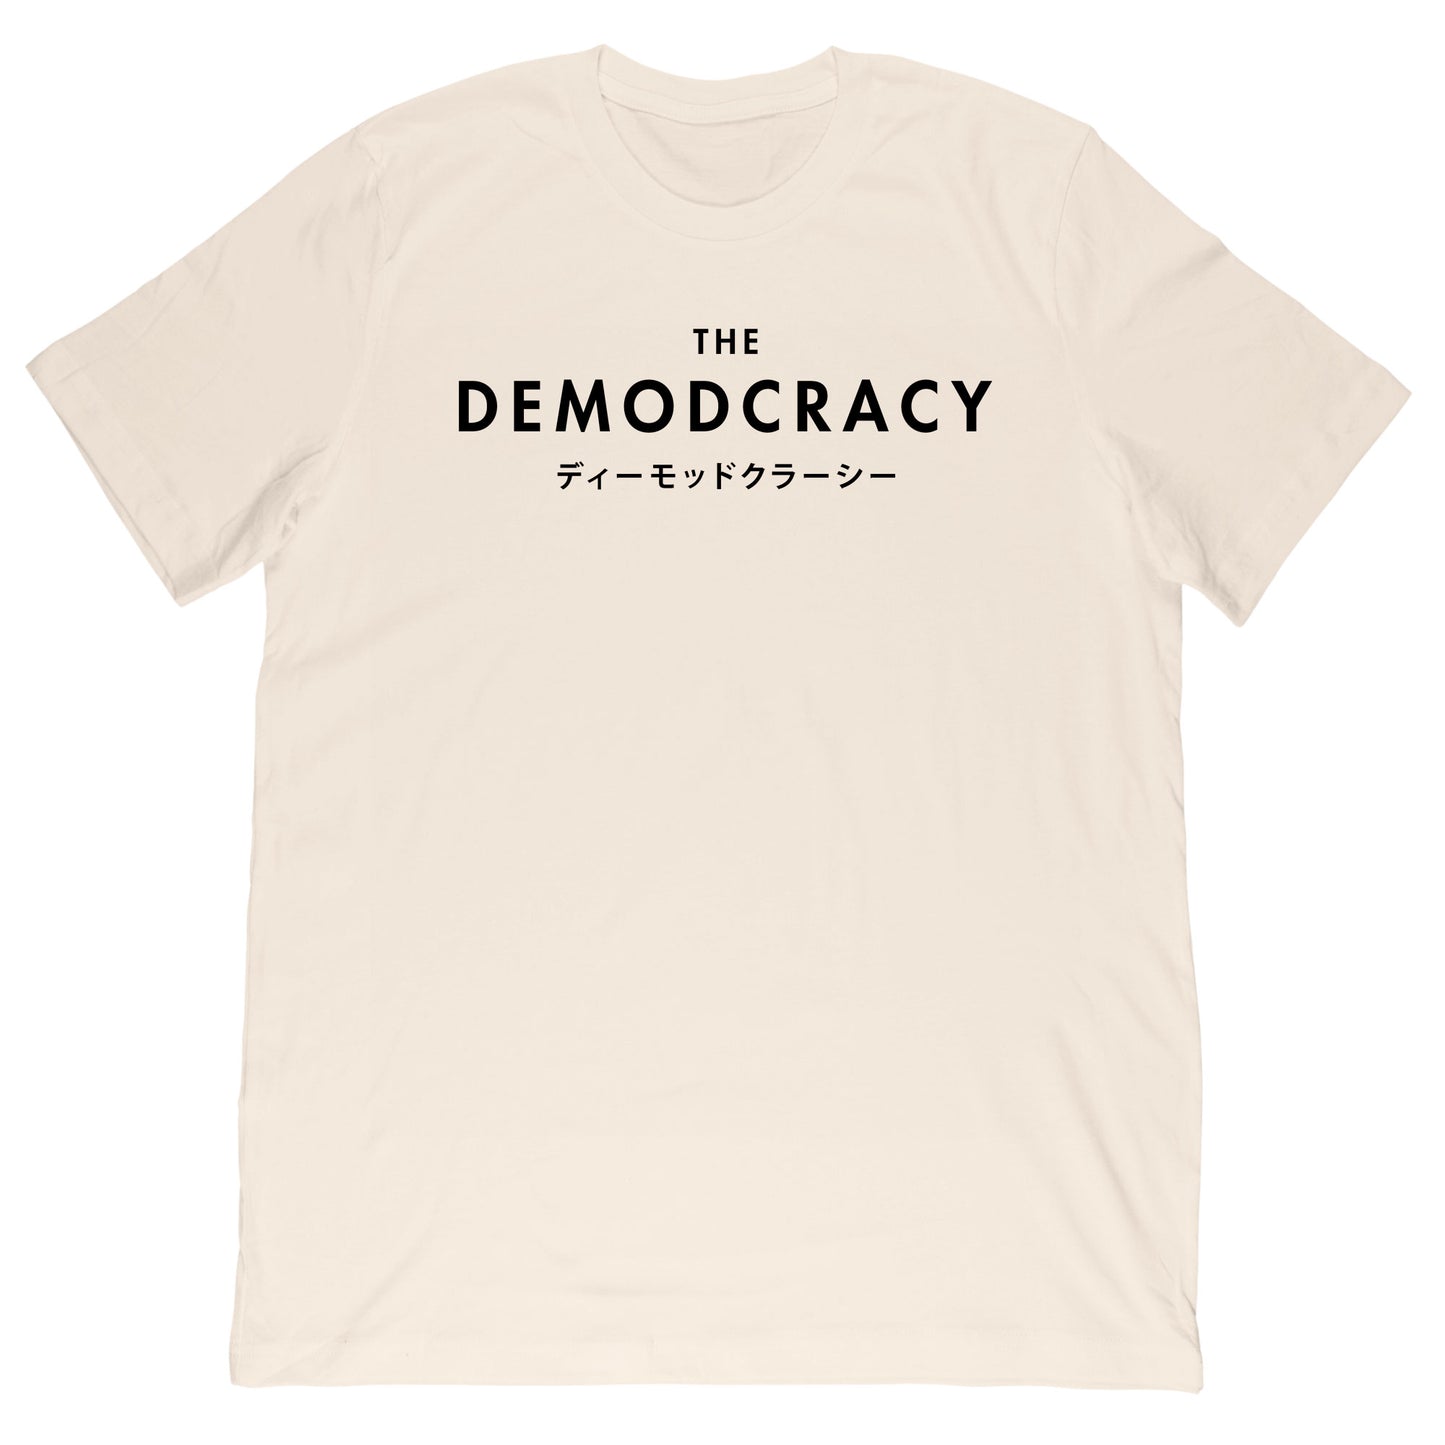 TheDeModcracy - Katakana Tee